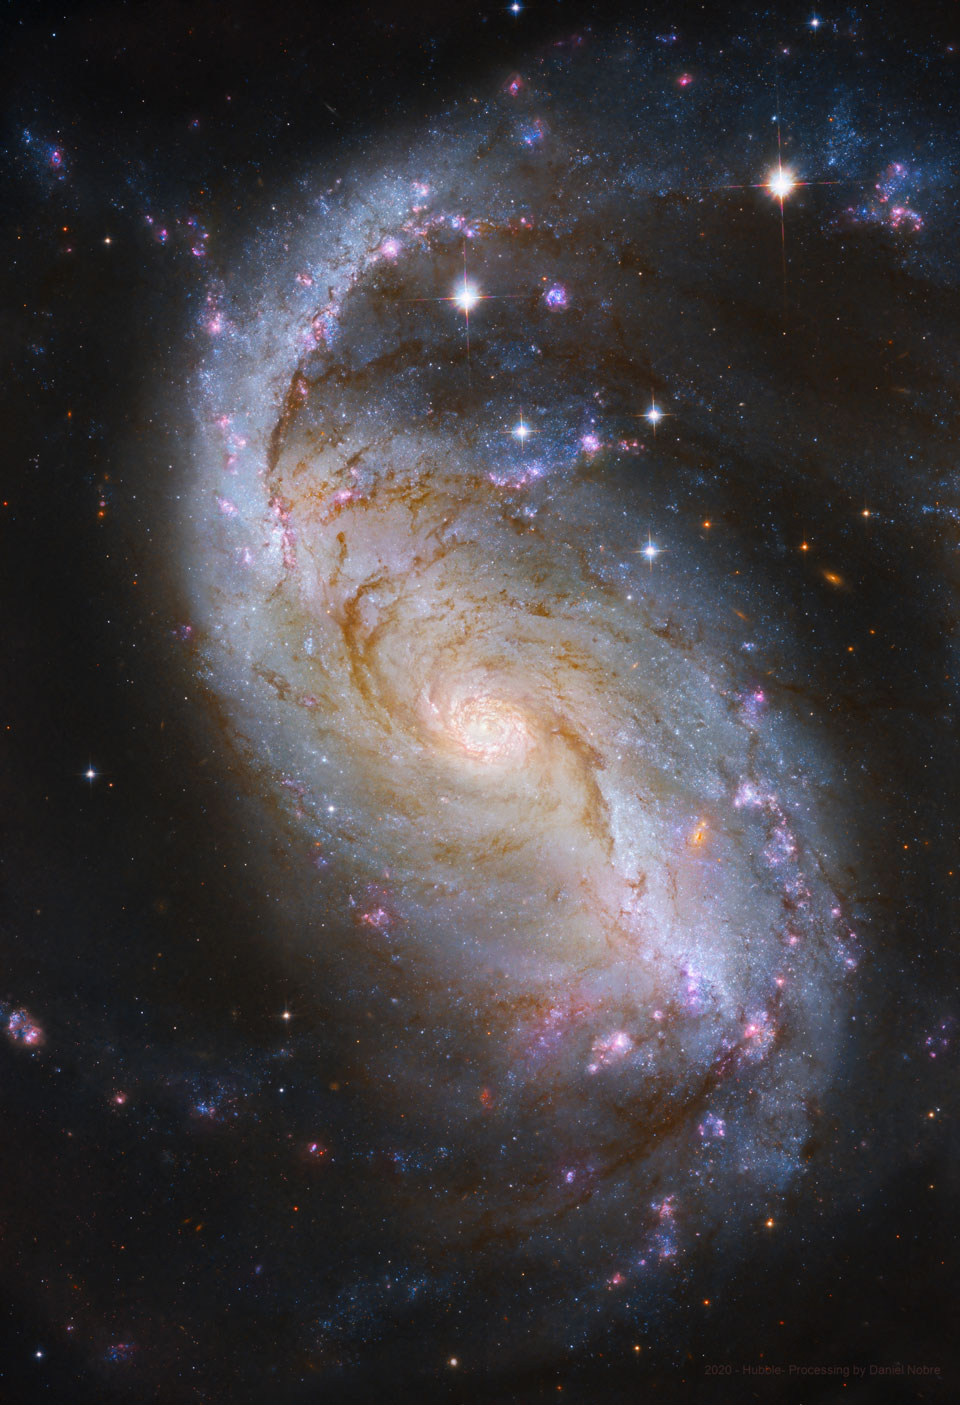 Detailreiches Hubble-Bild der Balkenspiralgalaxie NGC 1672; Ein Klick auf das Bild lädt die höchstaufgelöste verfügbare Version.